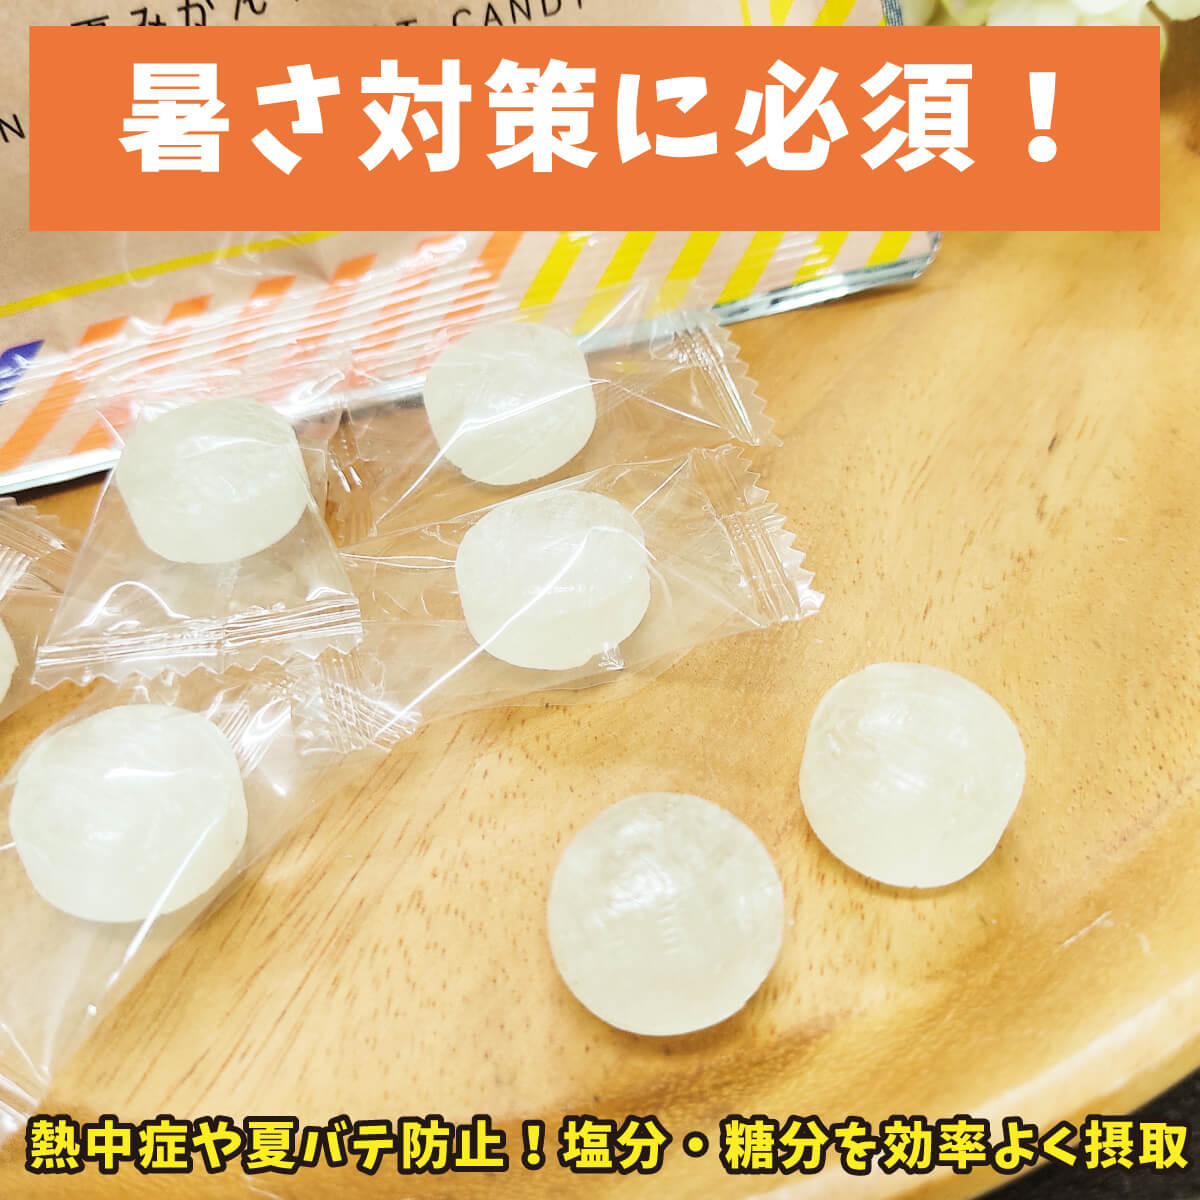 柚子屋本店スタッフが実感した、夏みかん塩飴を全力でおすすめする理由